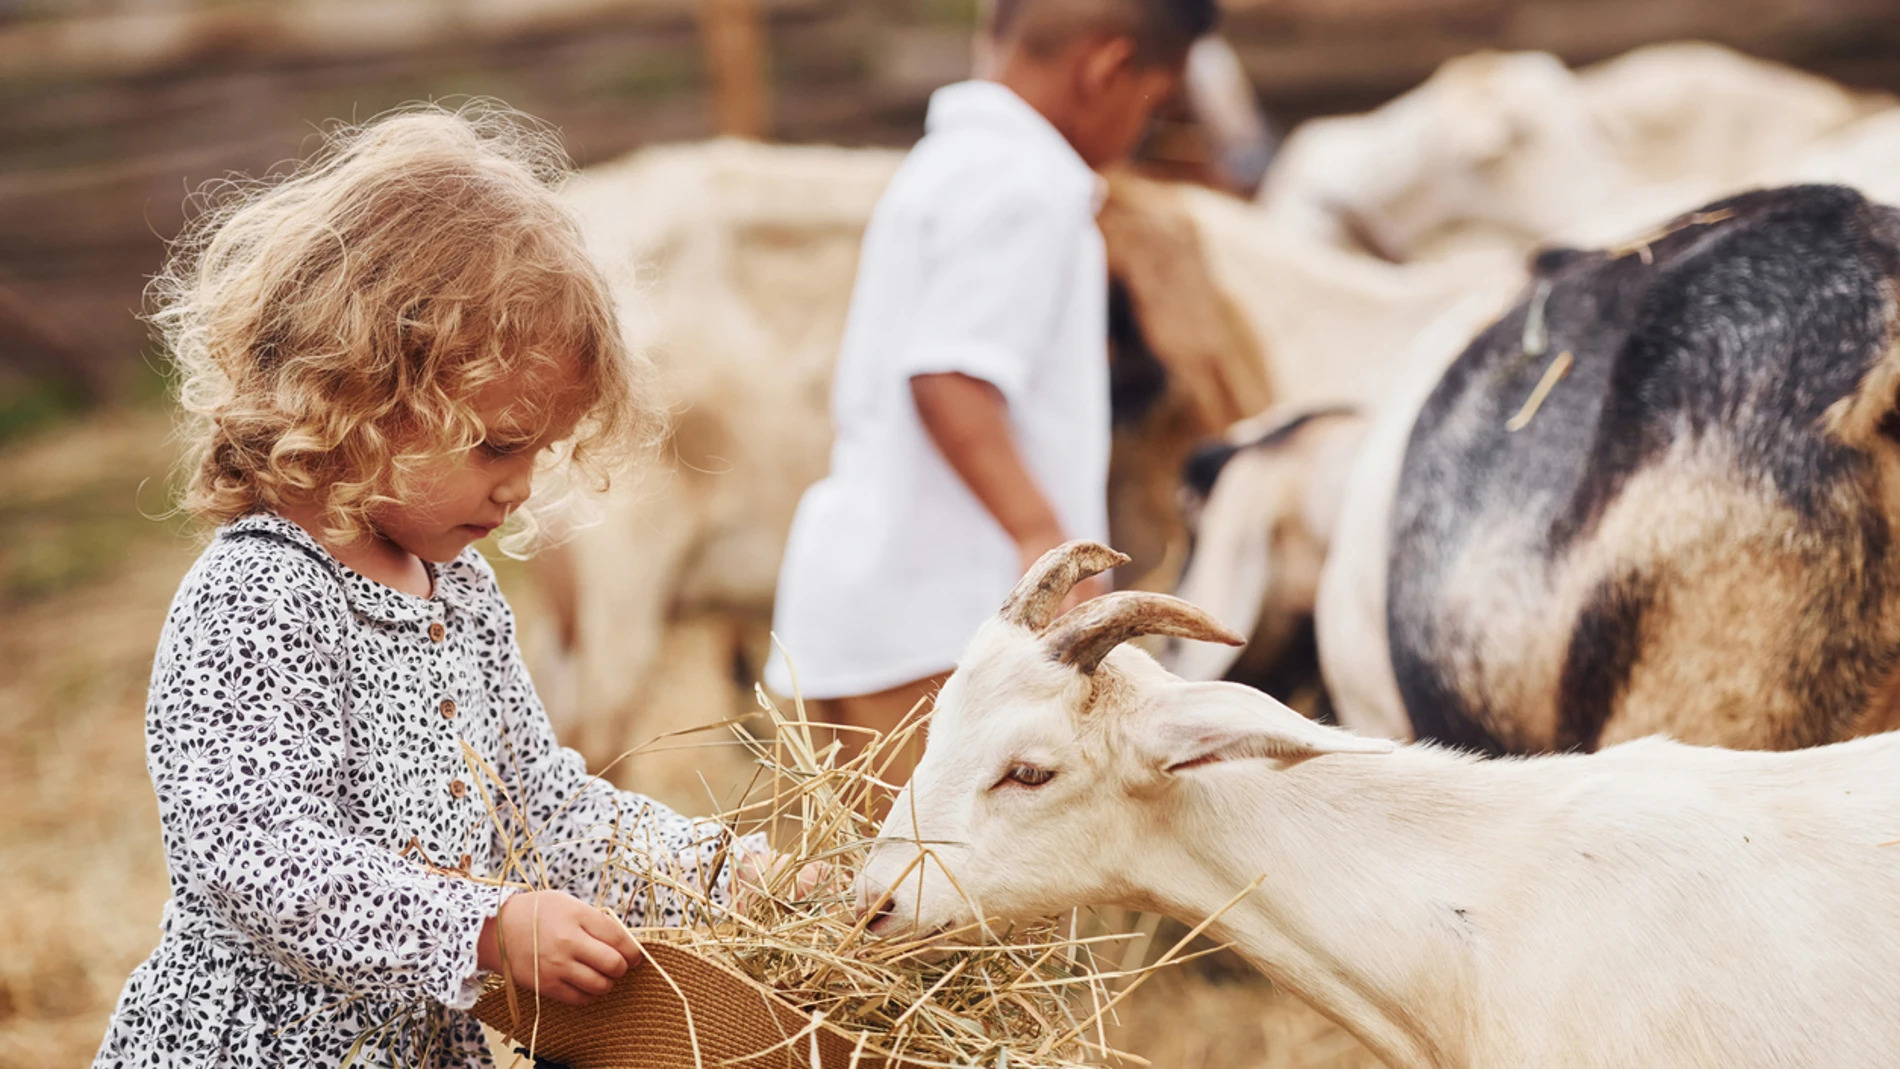 Una niña alimenta a una cabra en una granja